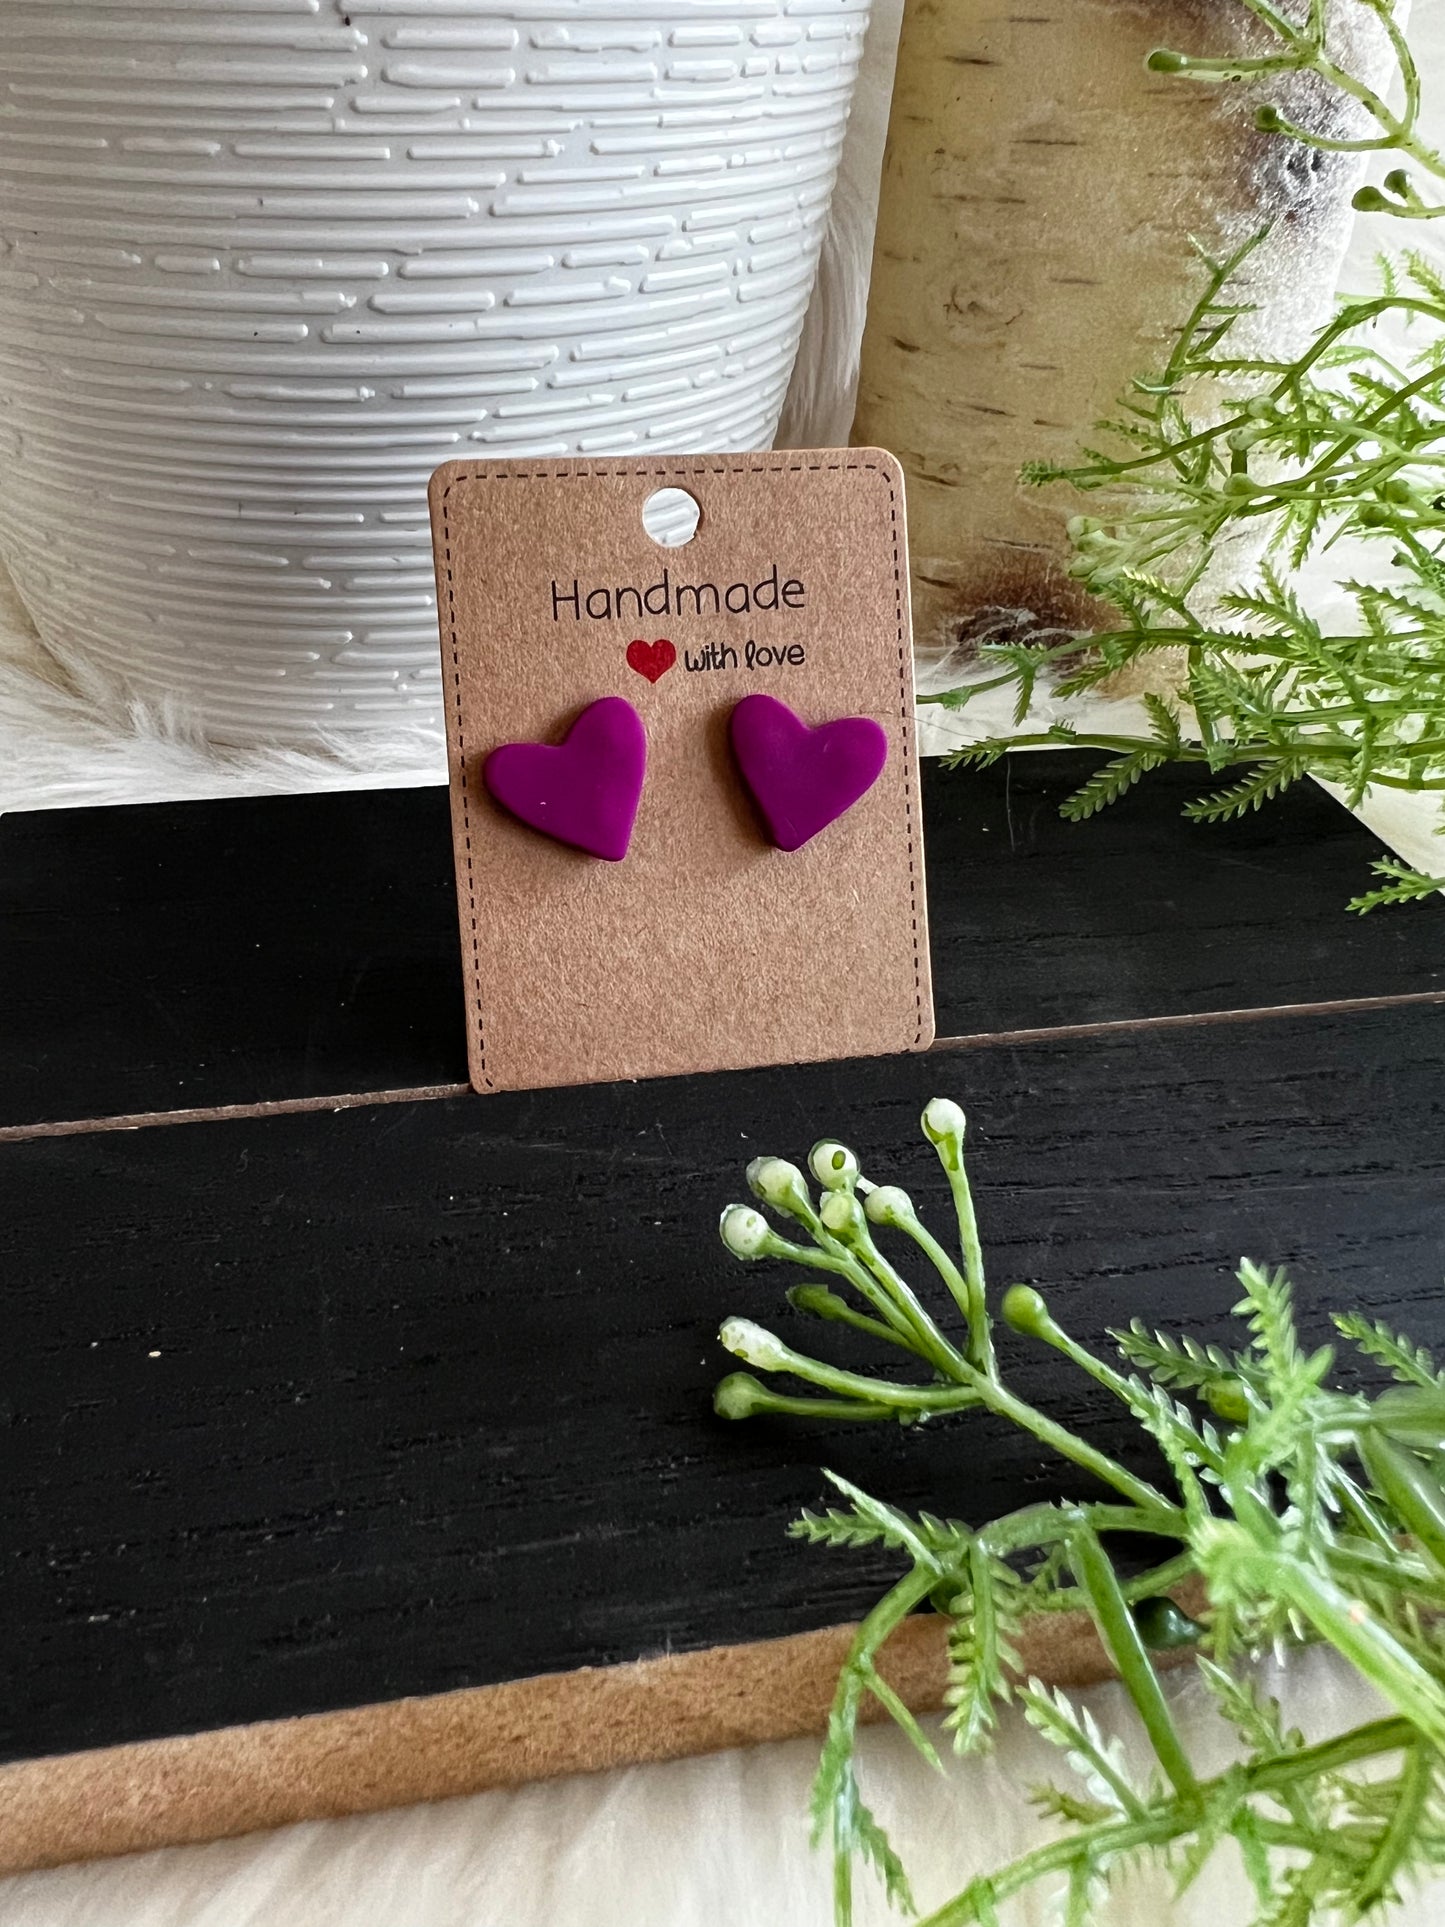 Purple Heart Stud Earrings